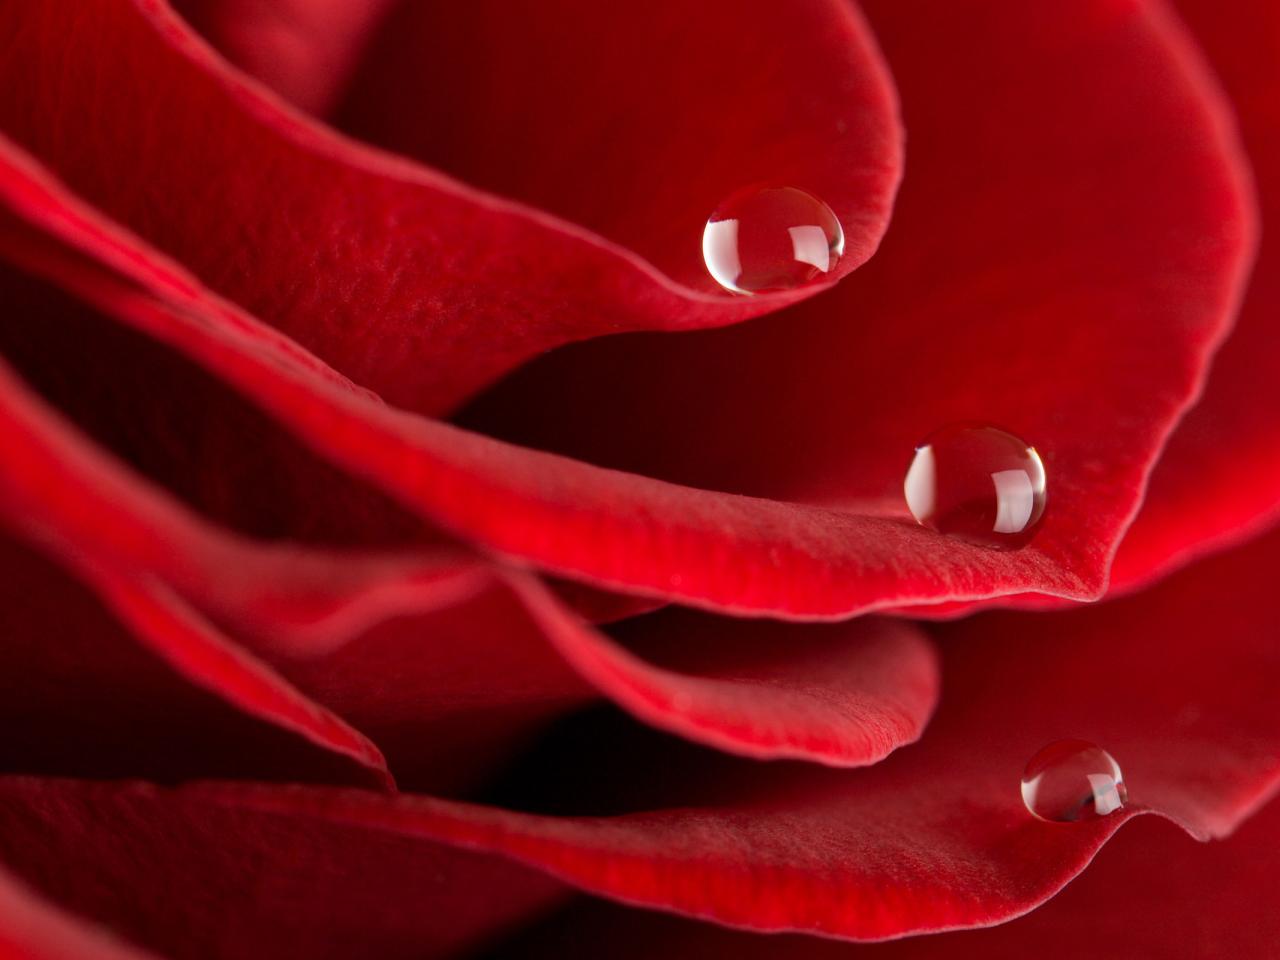 обои Красная роза с капельками росы фото